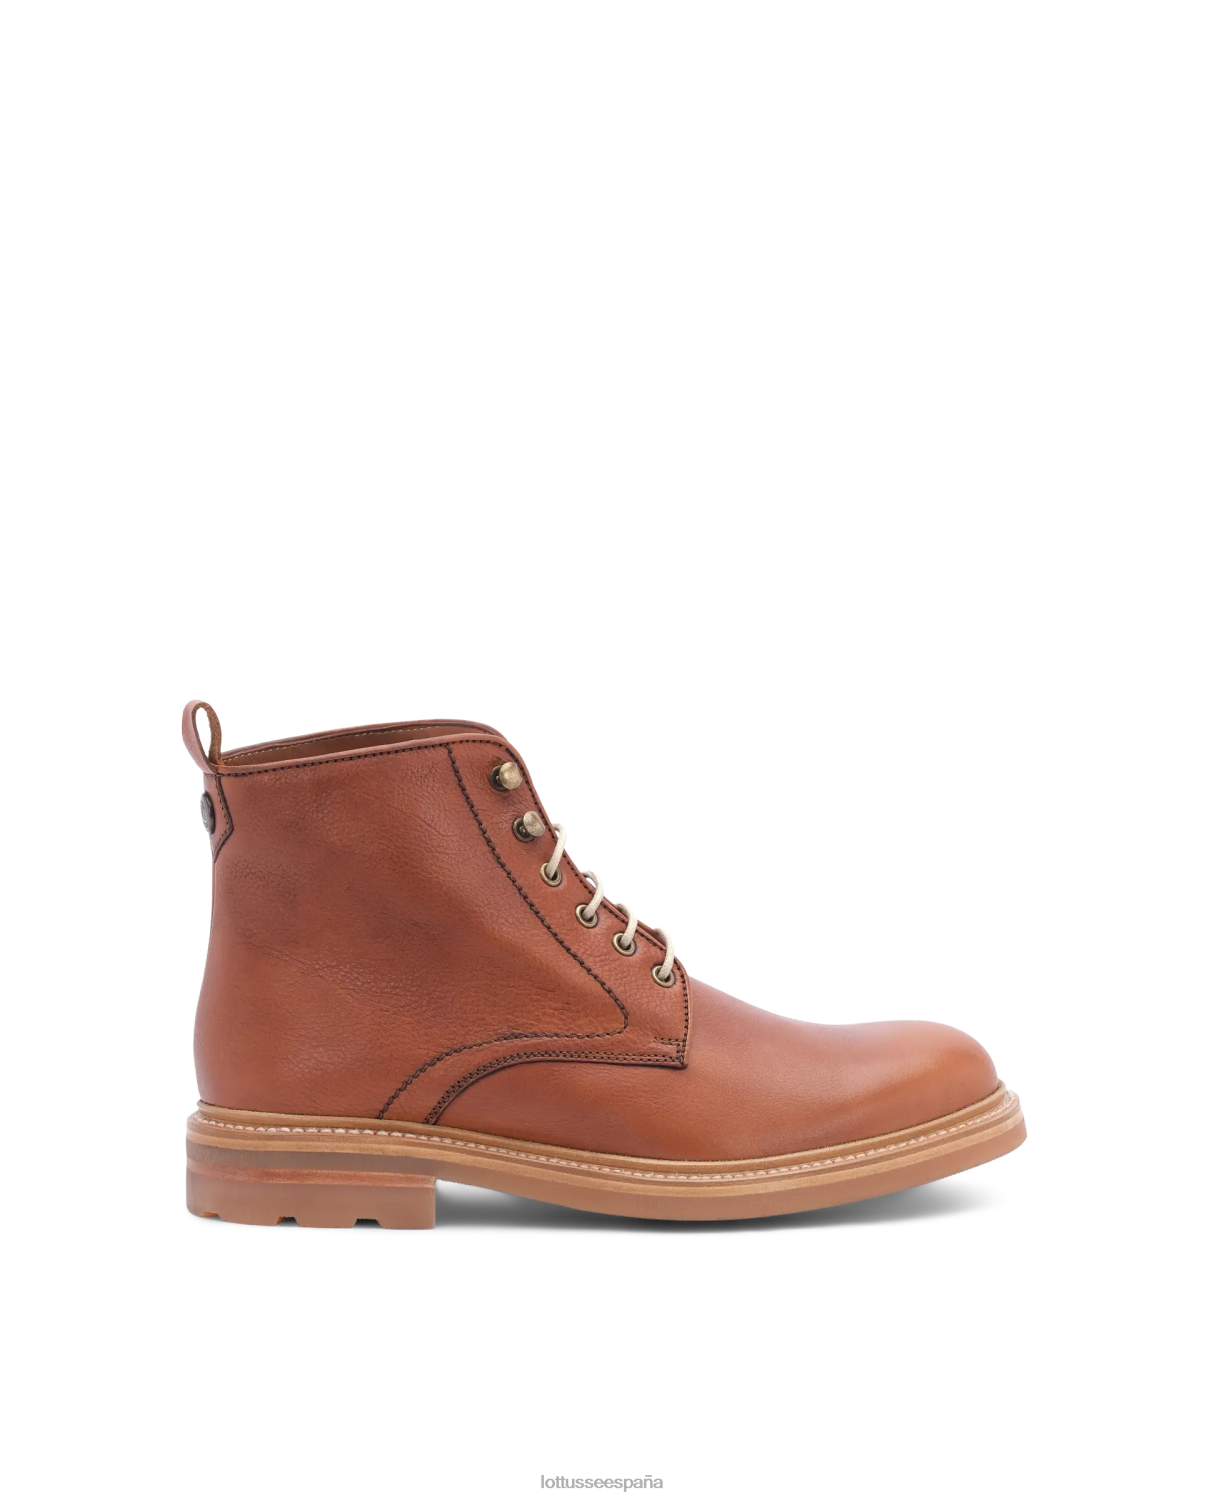 Lottusse botas bonaire con cordones marrón hombres calzado V40NX132